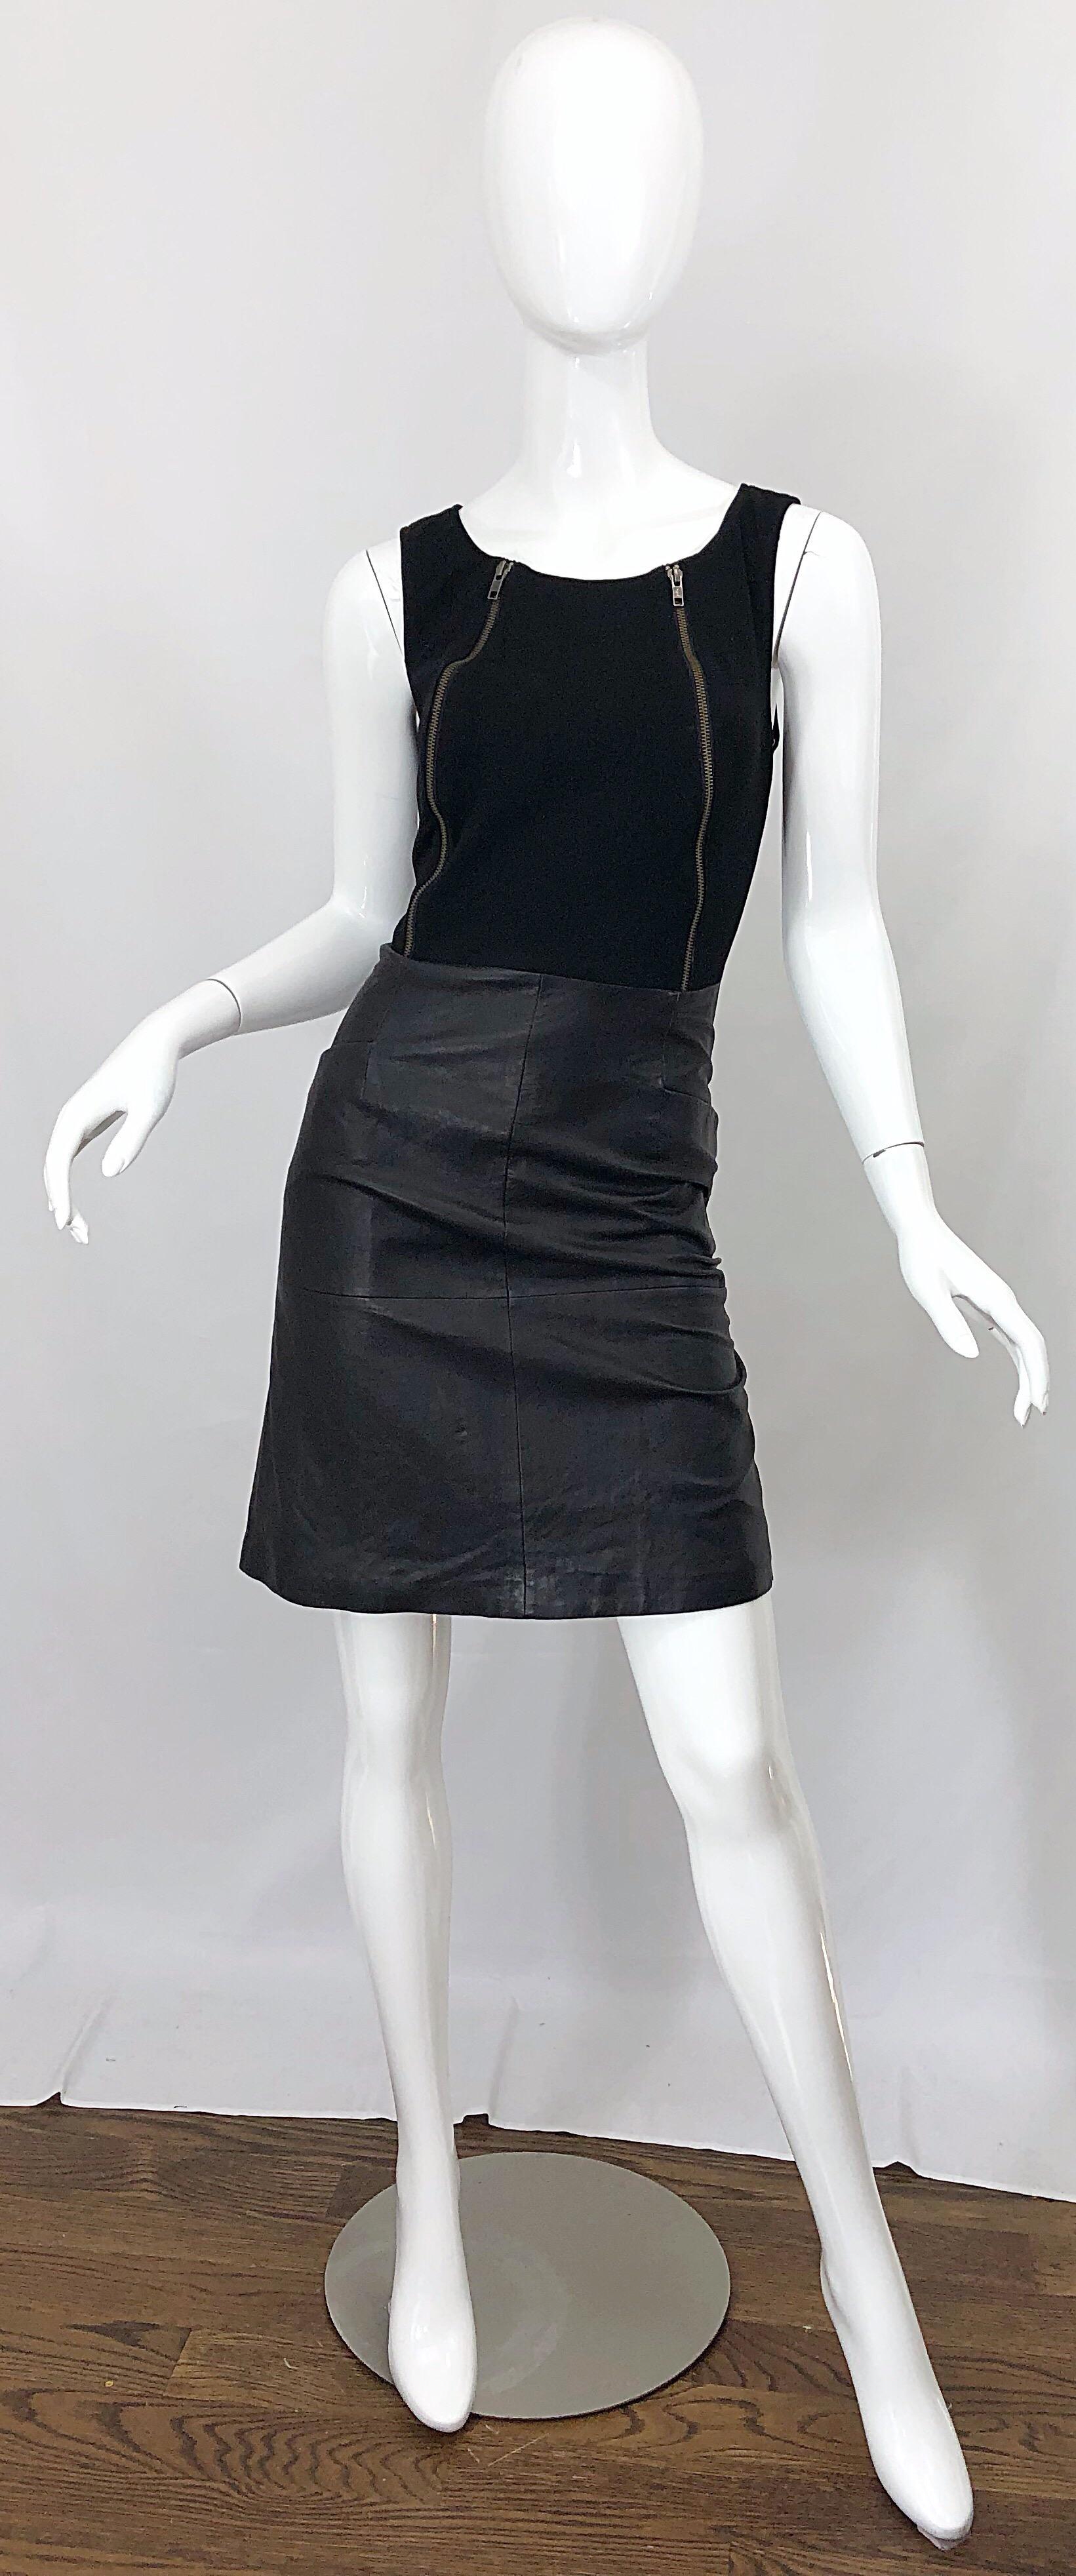 Nouveau avec étiquettes robe JEAN LOUIS SCHERRER des années 90 en rayonne noire et cuir avec fermeture éclair ! Corsage ajusté en rayonne avec des fermetures éclair de chaque côté de la poitrine. Cette jupe flatteuse en cuir noir comporte des poches